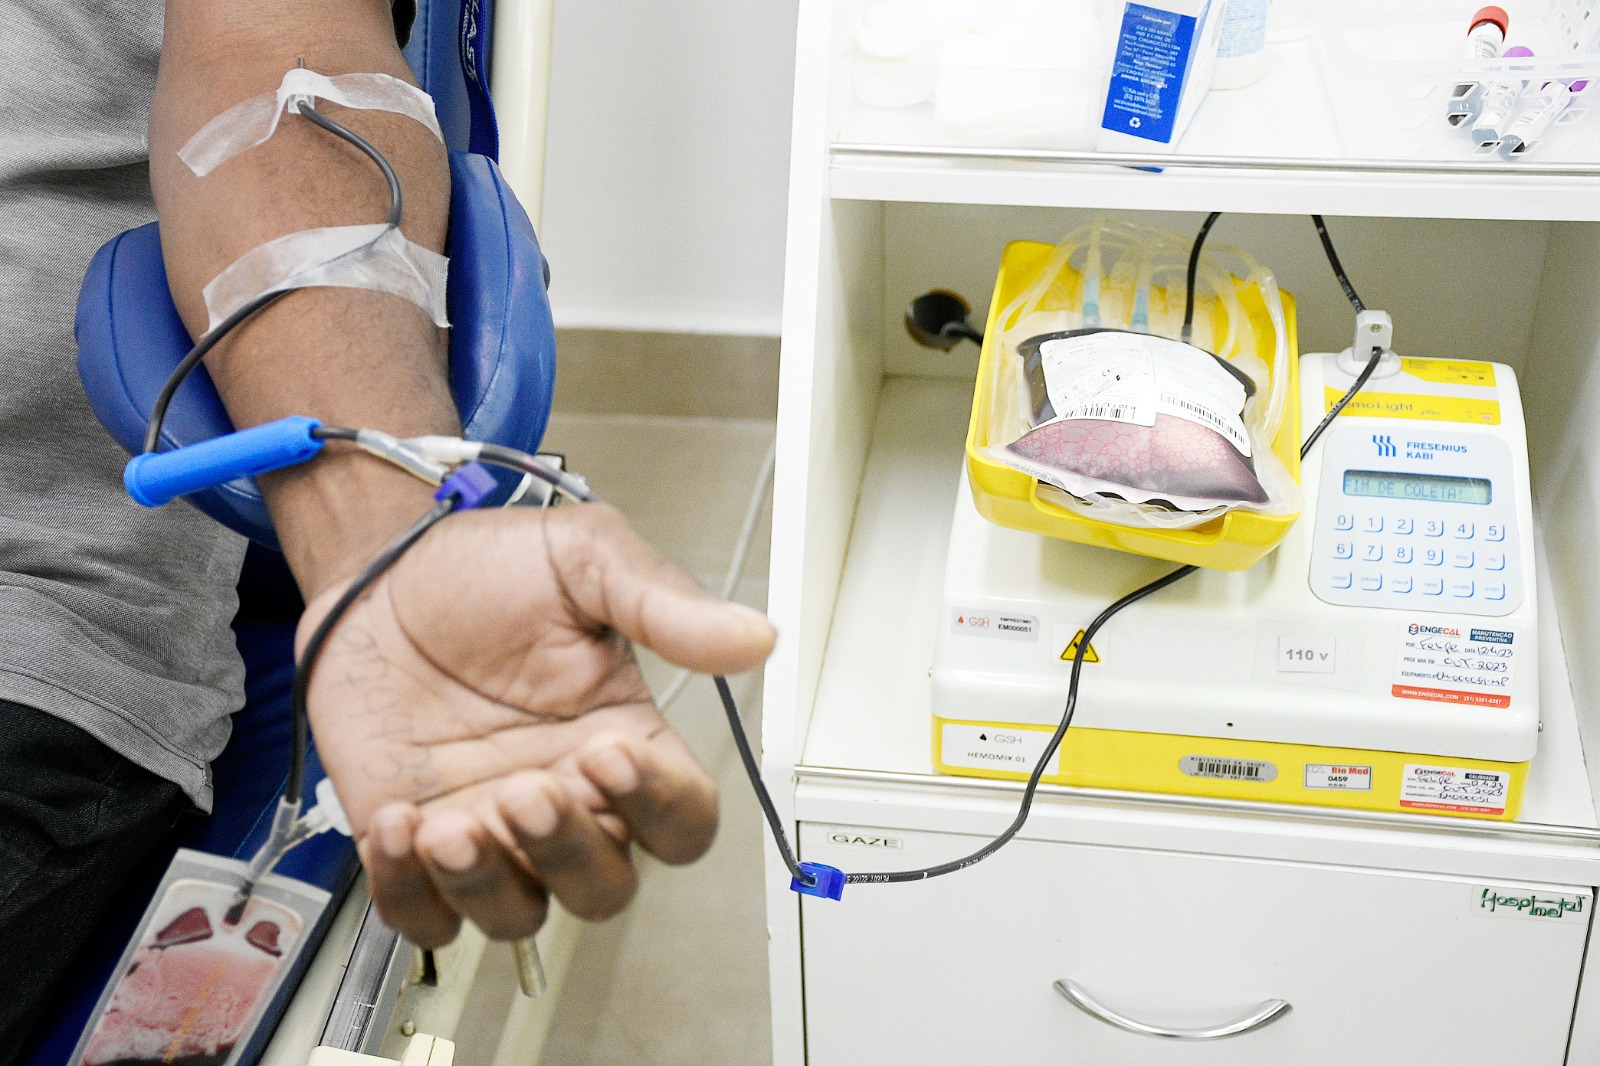 Hospital Geral de Nova Iguaçu amplia horário para doação de sangue